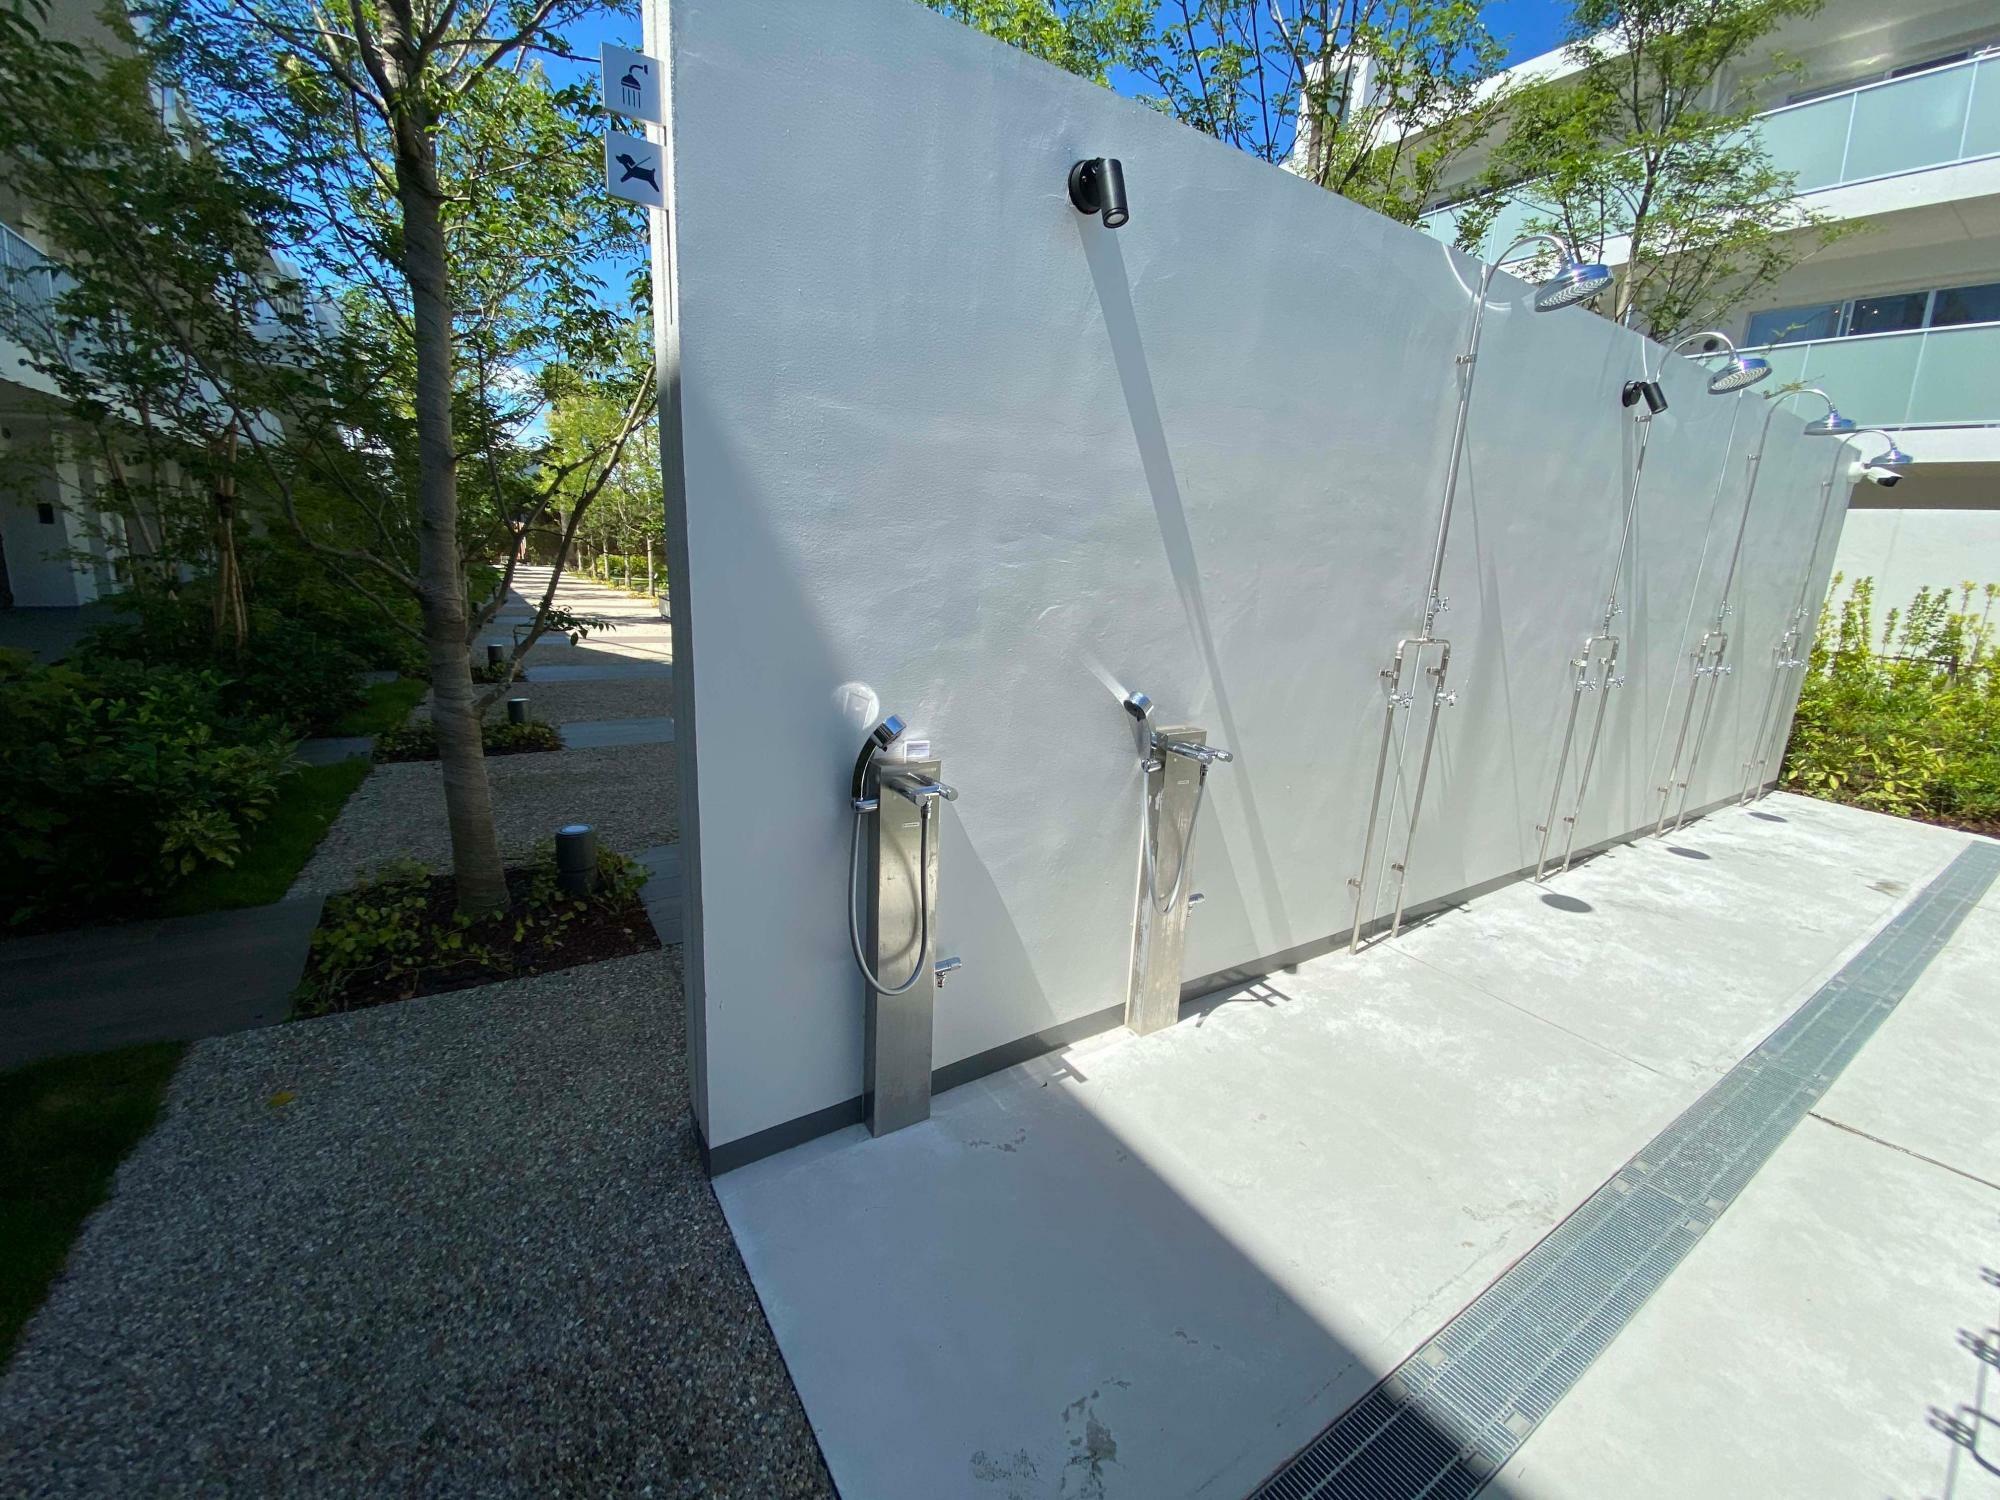 「レ・ジェイド 辻堂東海岸 SEA-SIDE VILLA」の中庭に設置された温水シャワー。サーフボードを洗うこともできる。2020年夏に筆者撮影